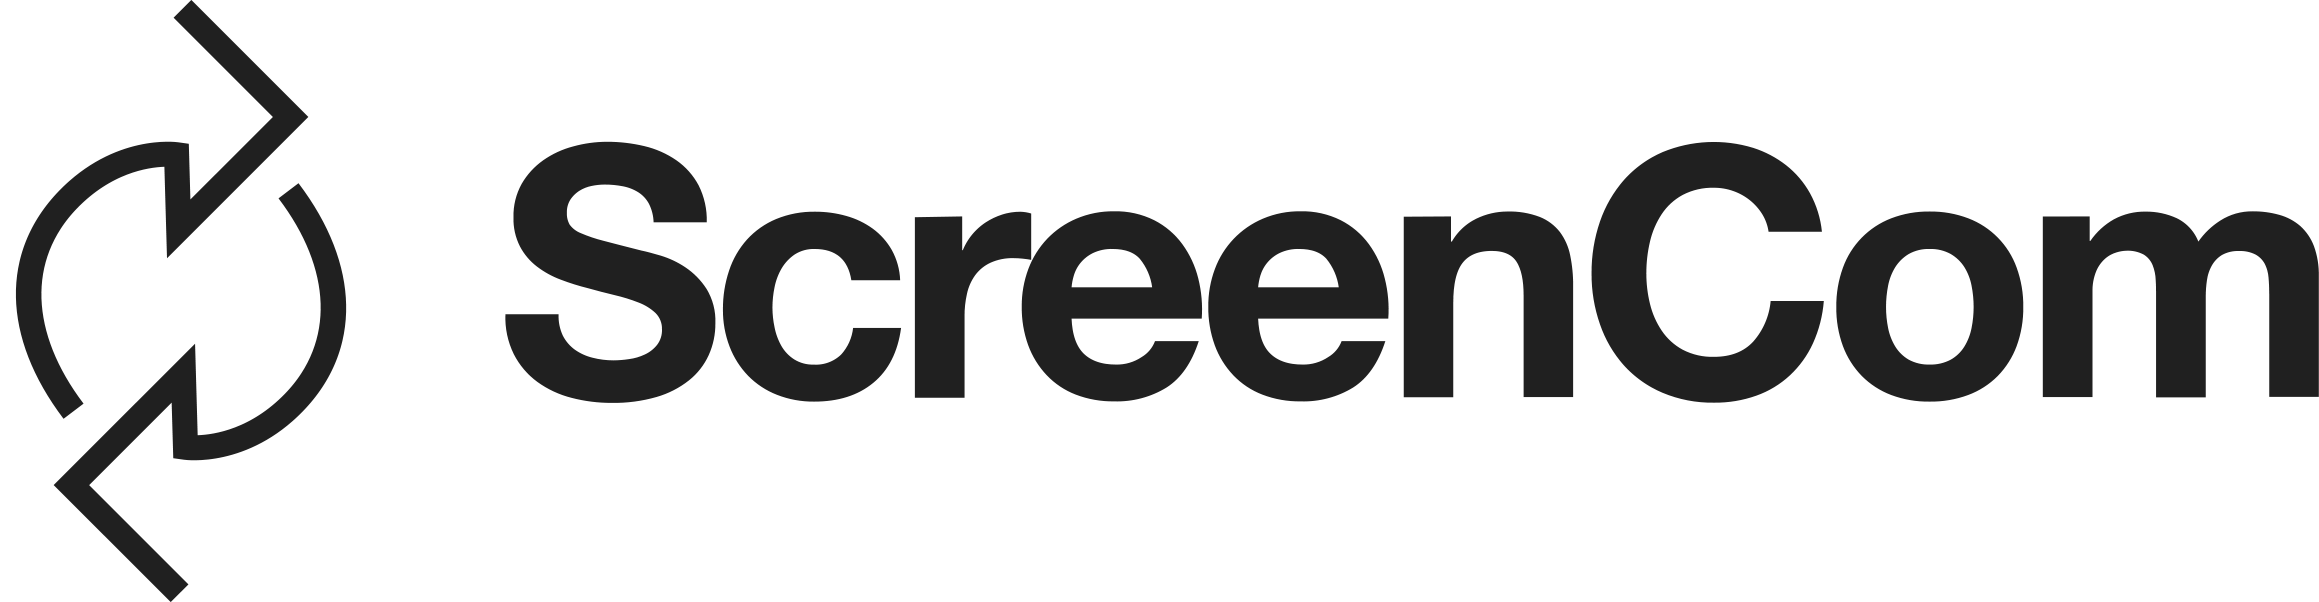 logo-screencom2020(black).png